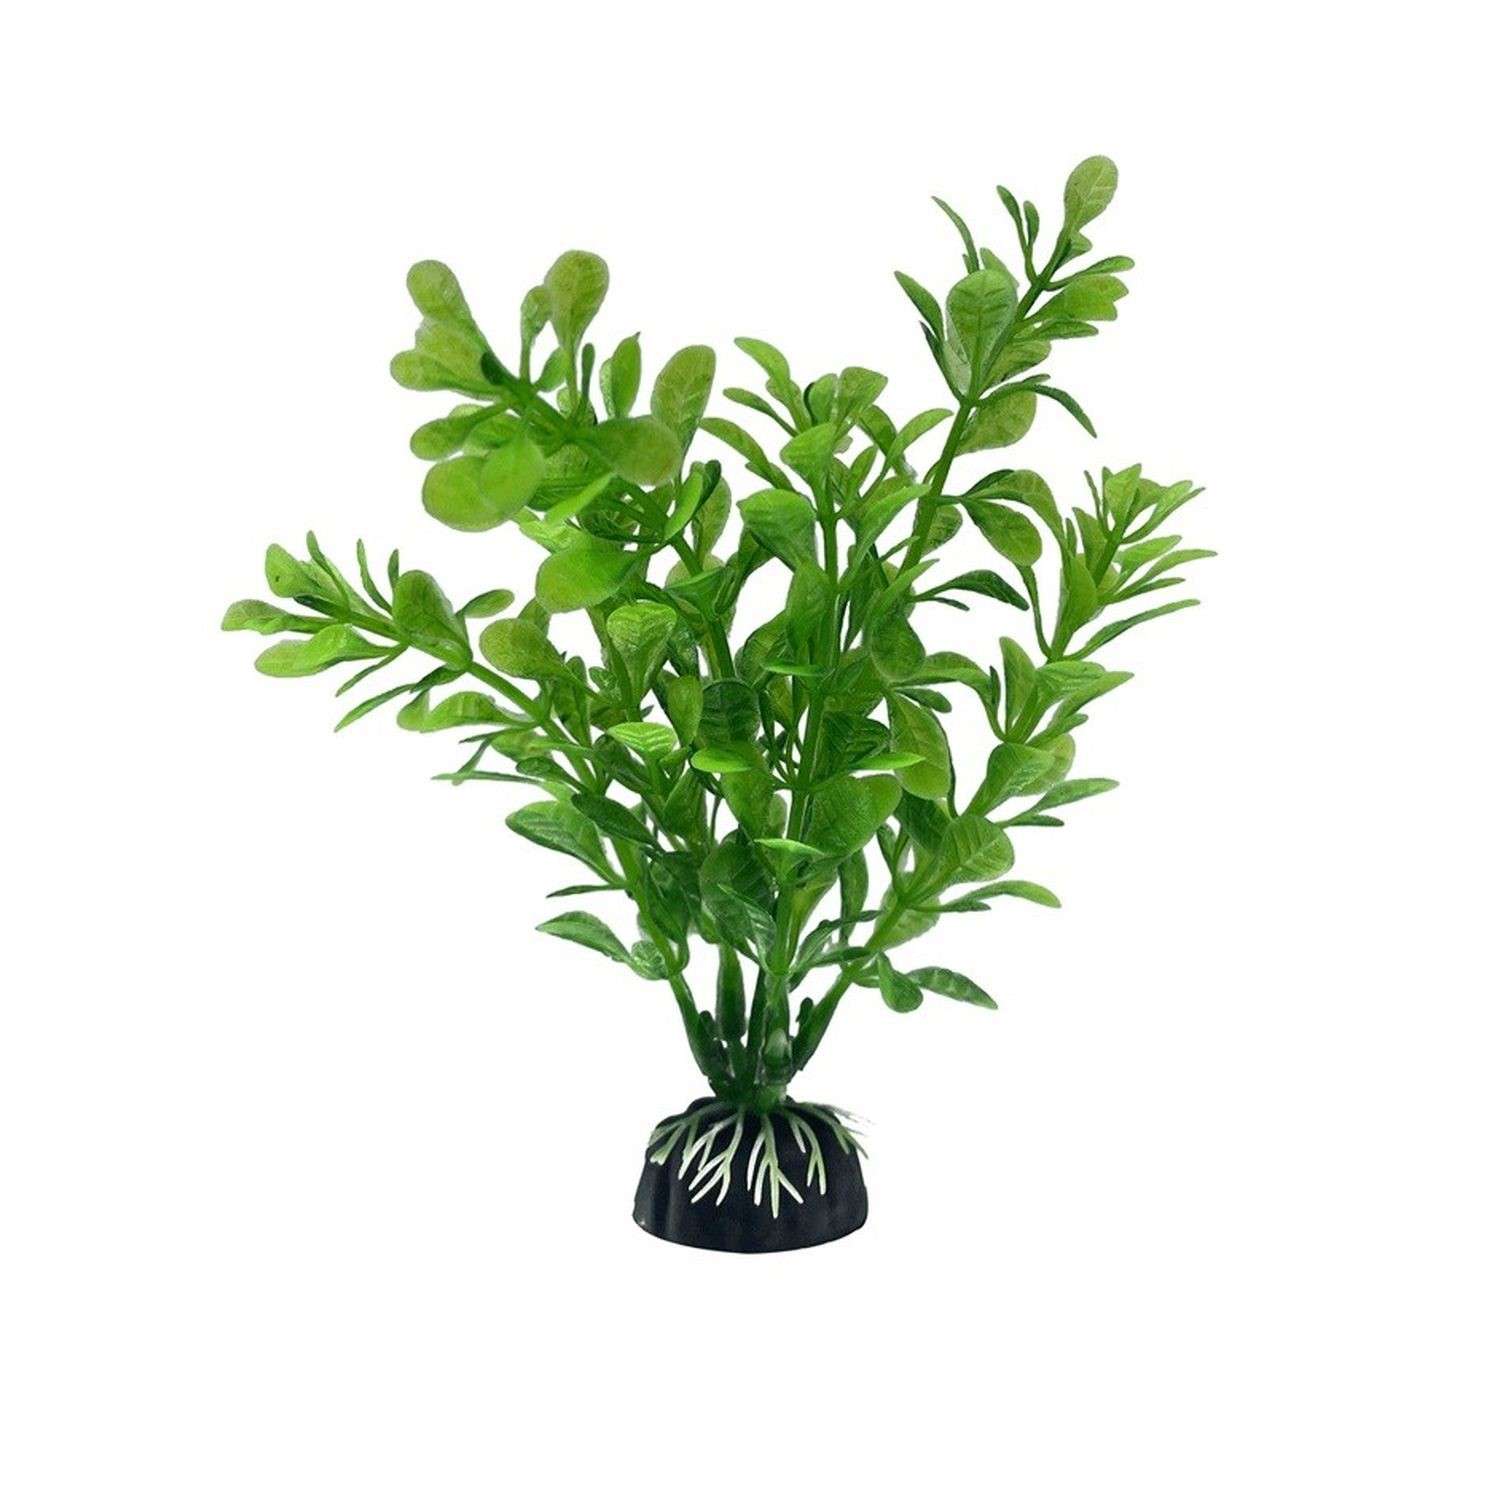 Аквариумное растение Rabizy водоросли 3х13 см - фото 1